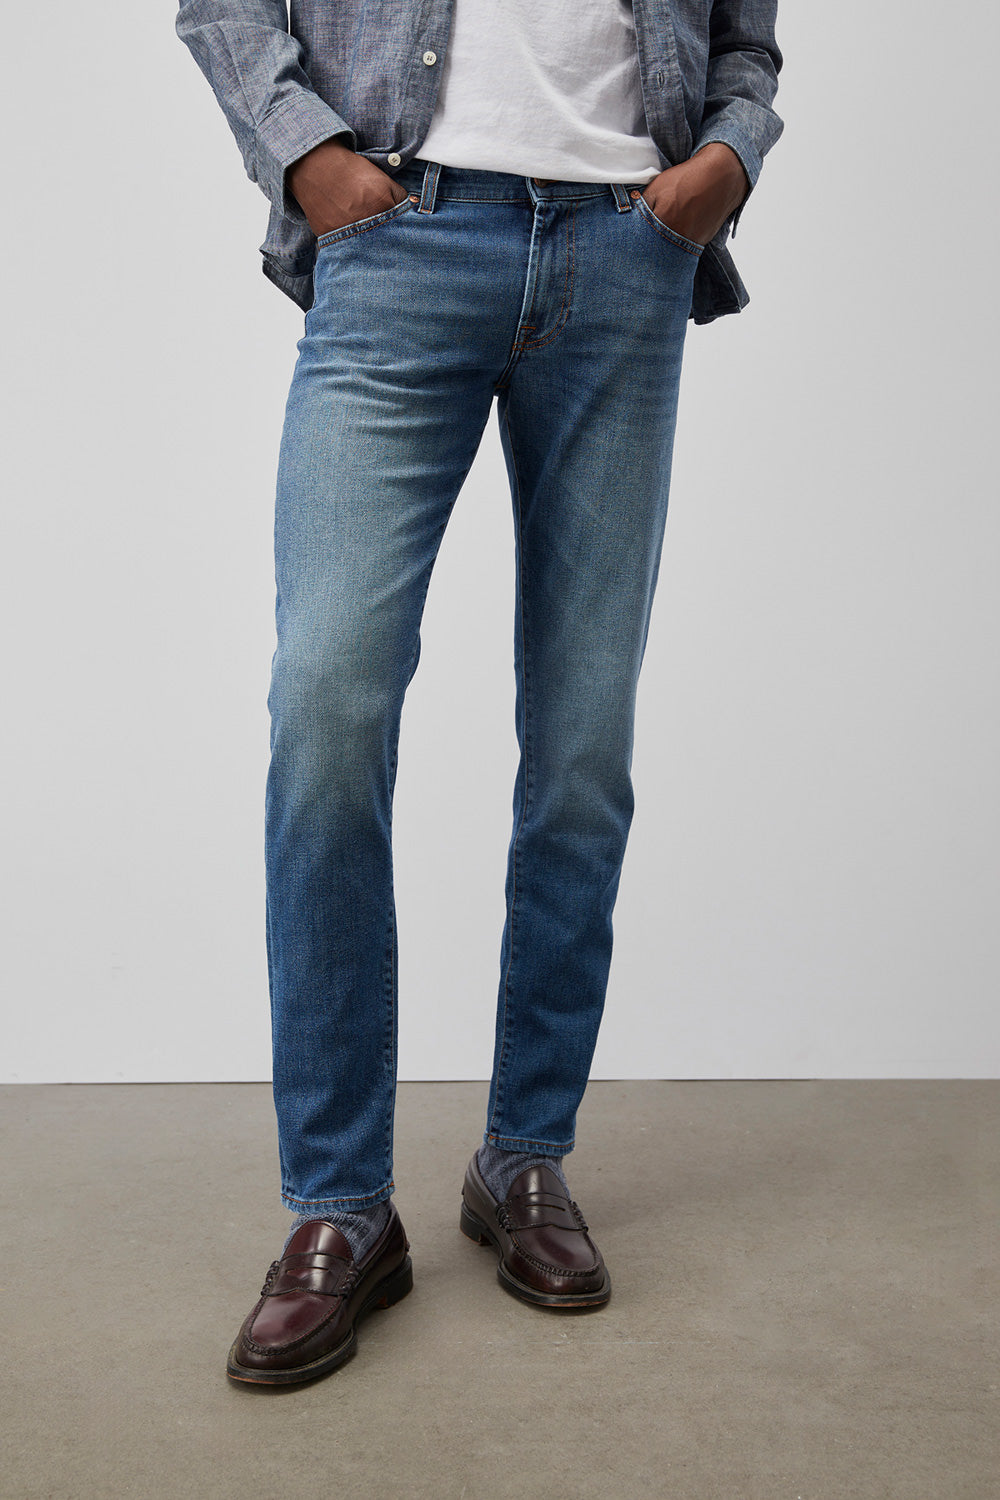 Roy Rogers jeans uomo 517  denim elast